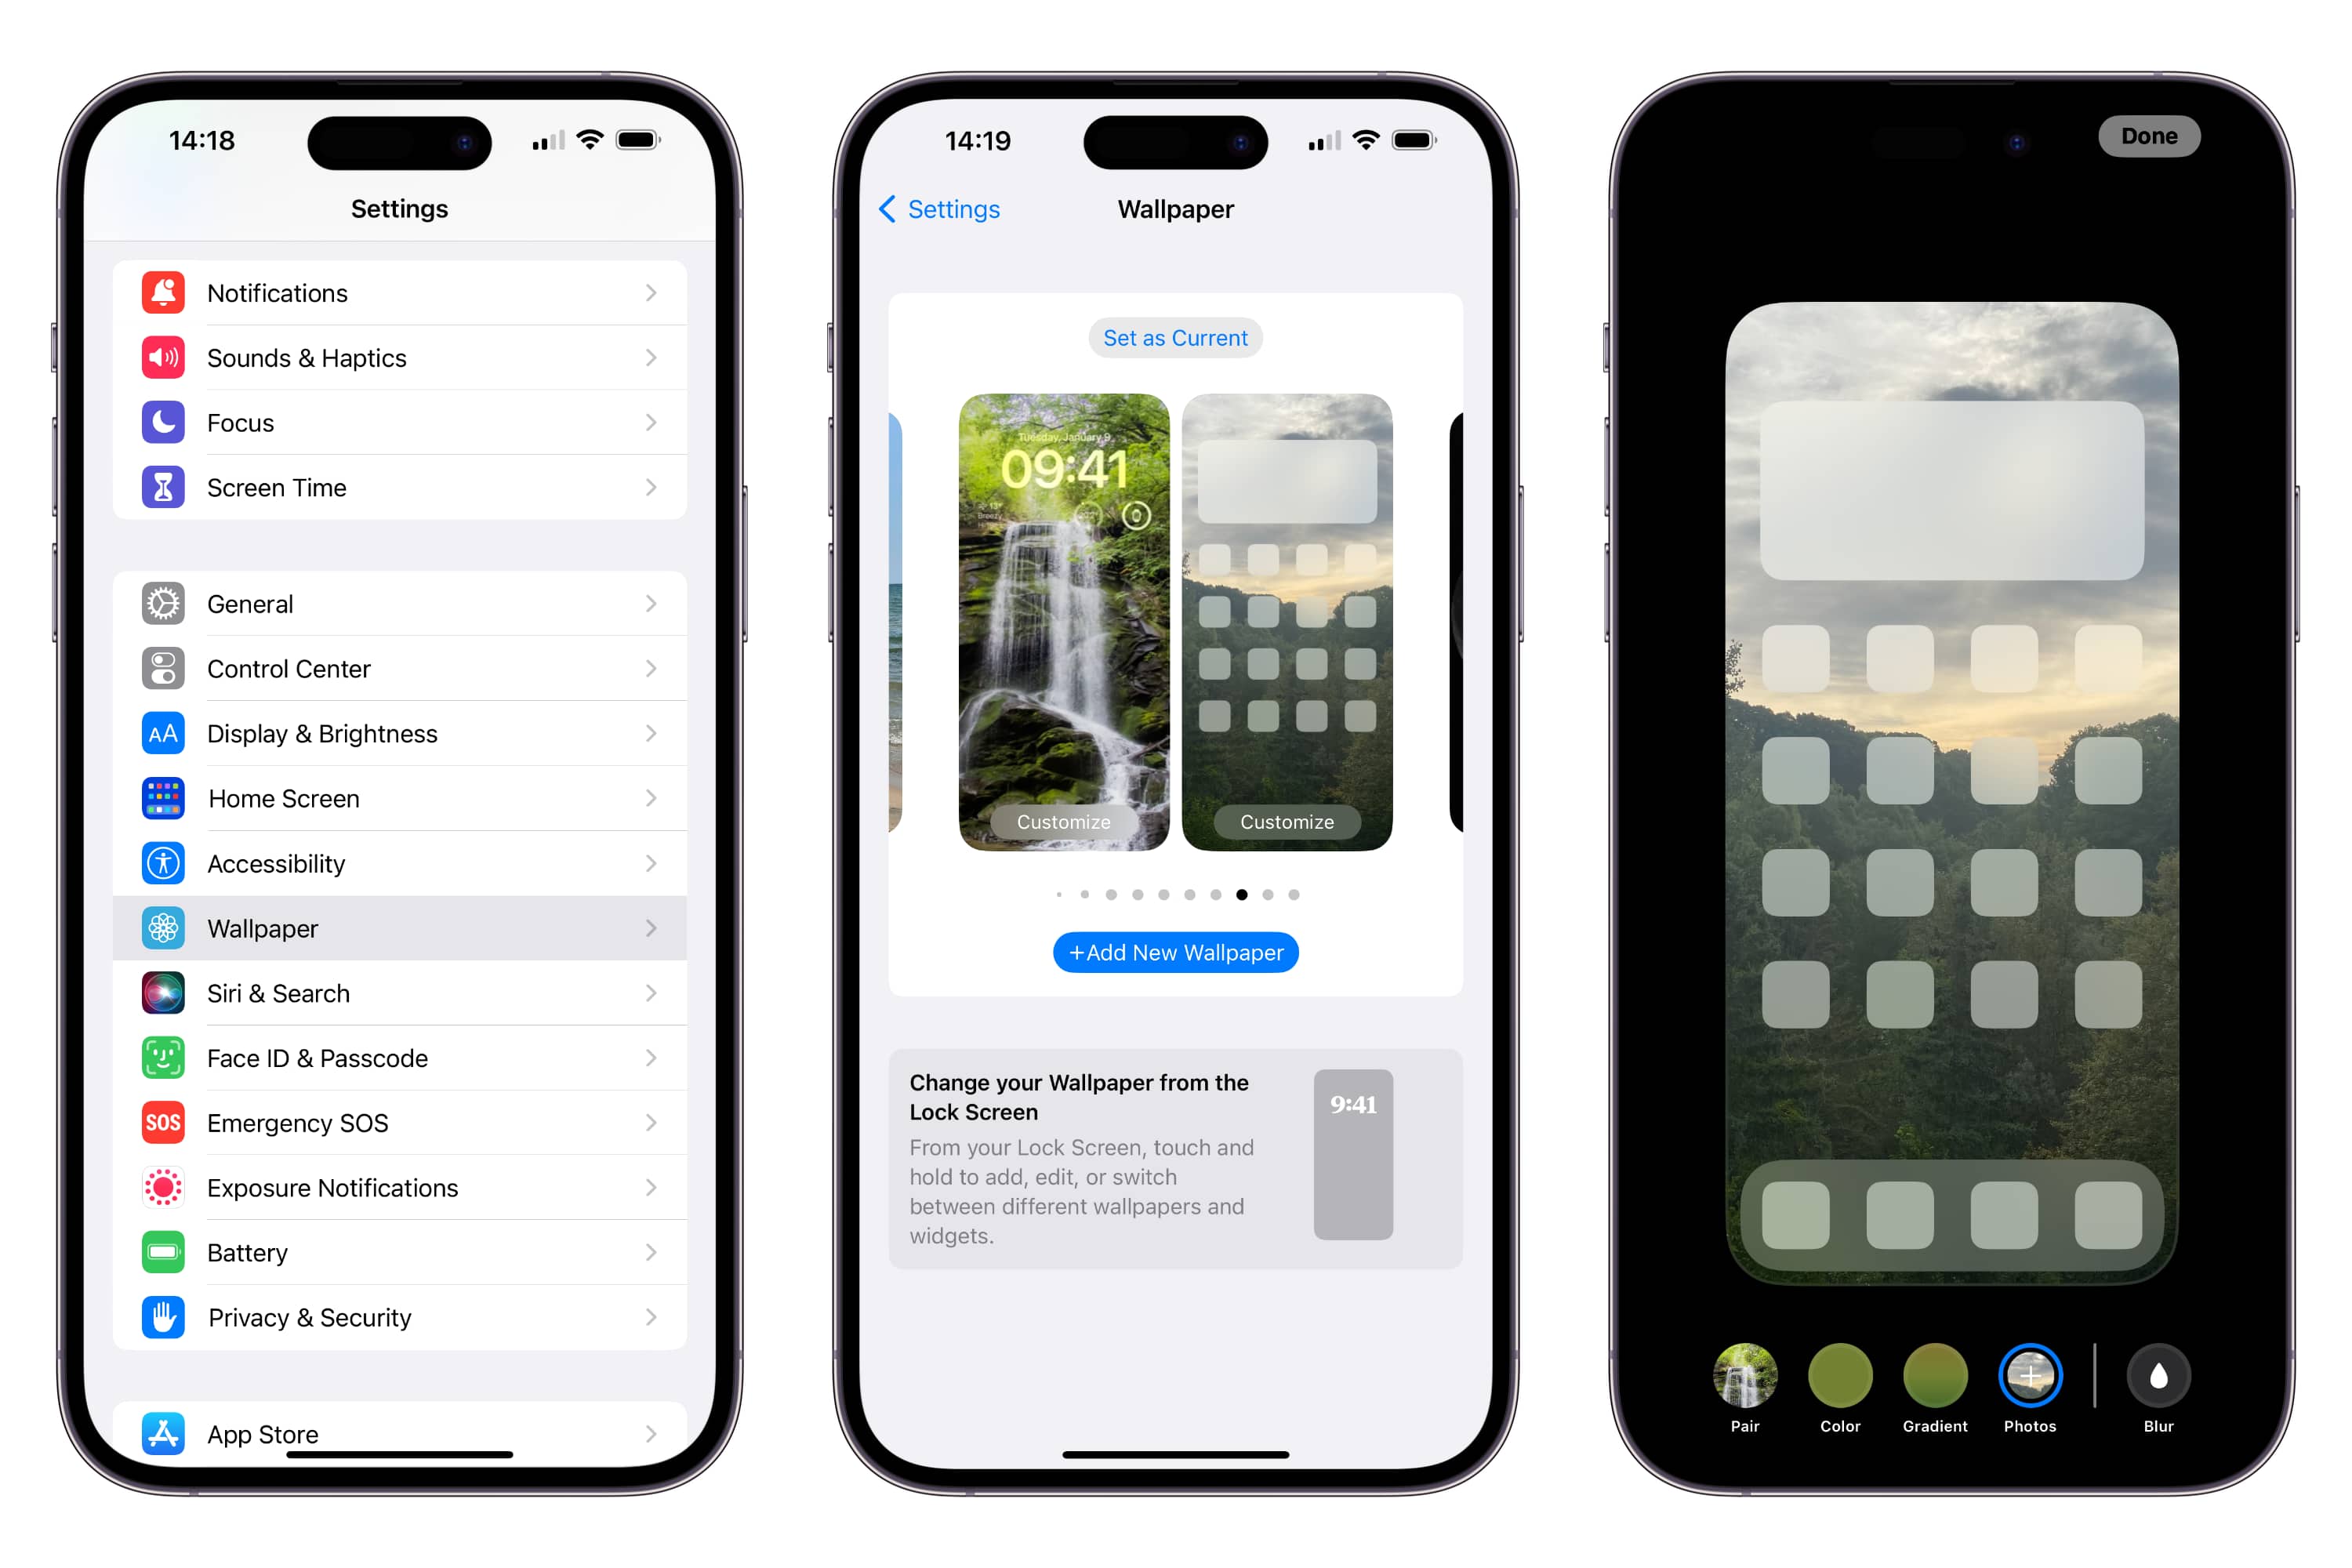 Hình nền màn hình chính iOS 16 là một trong những lựa chọn đẹp và tinh tế nhất cho điện thoại của bạn. Với chất lượng hình ảnh tuyệt vời, các lựa chọn hình nền màn hình chính iOS 16 sẽ mang lại cho bạn cảm giác mới mẻ và thư giãn khi sử dụng điện thoại. Đừng bỏ lỡ cơ hội để trải nghiệm những thiết kế đẹp mắt này.